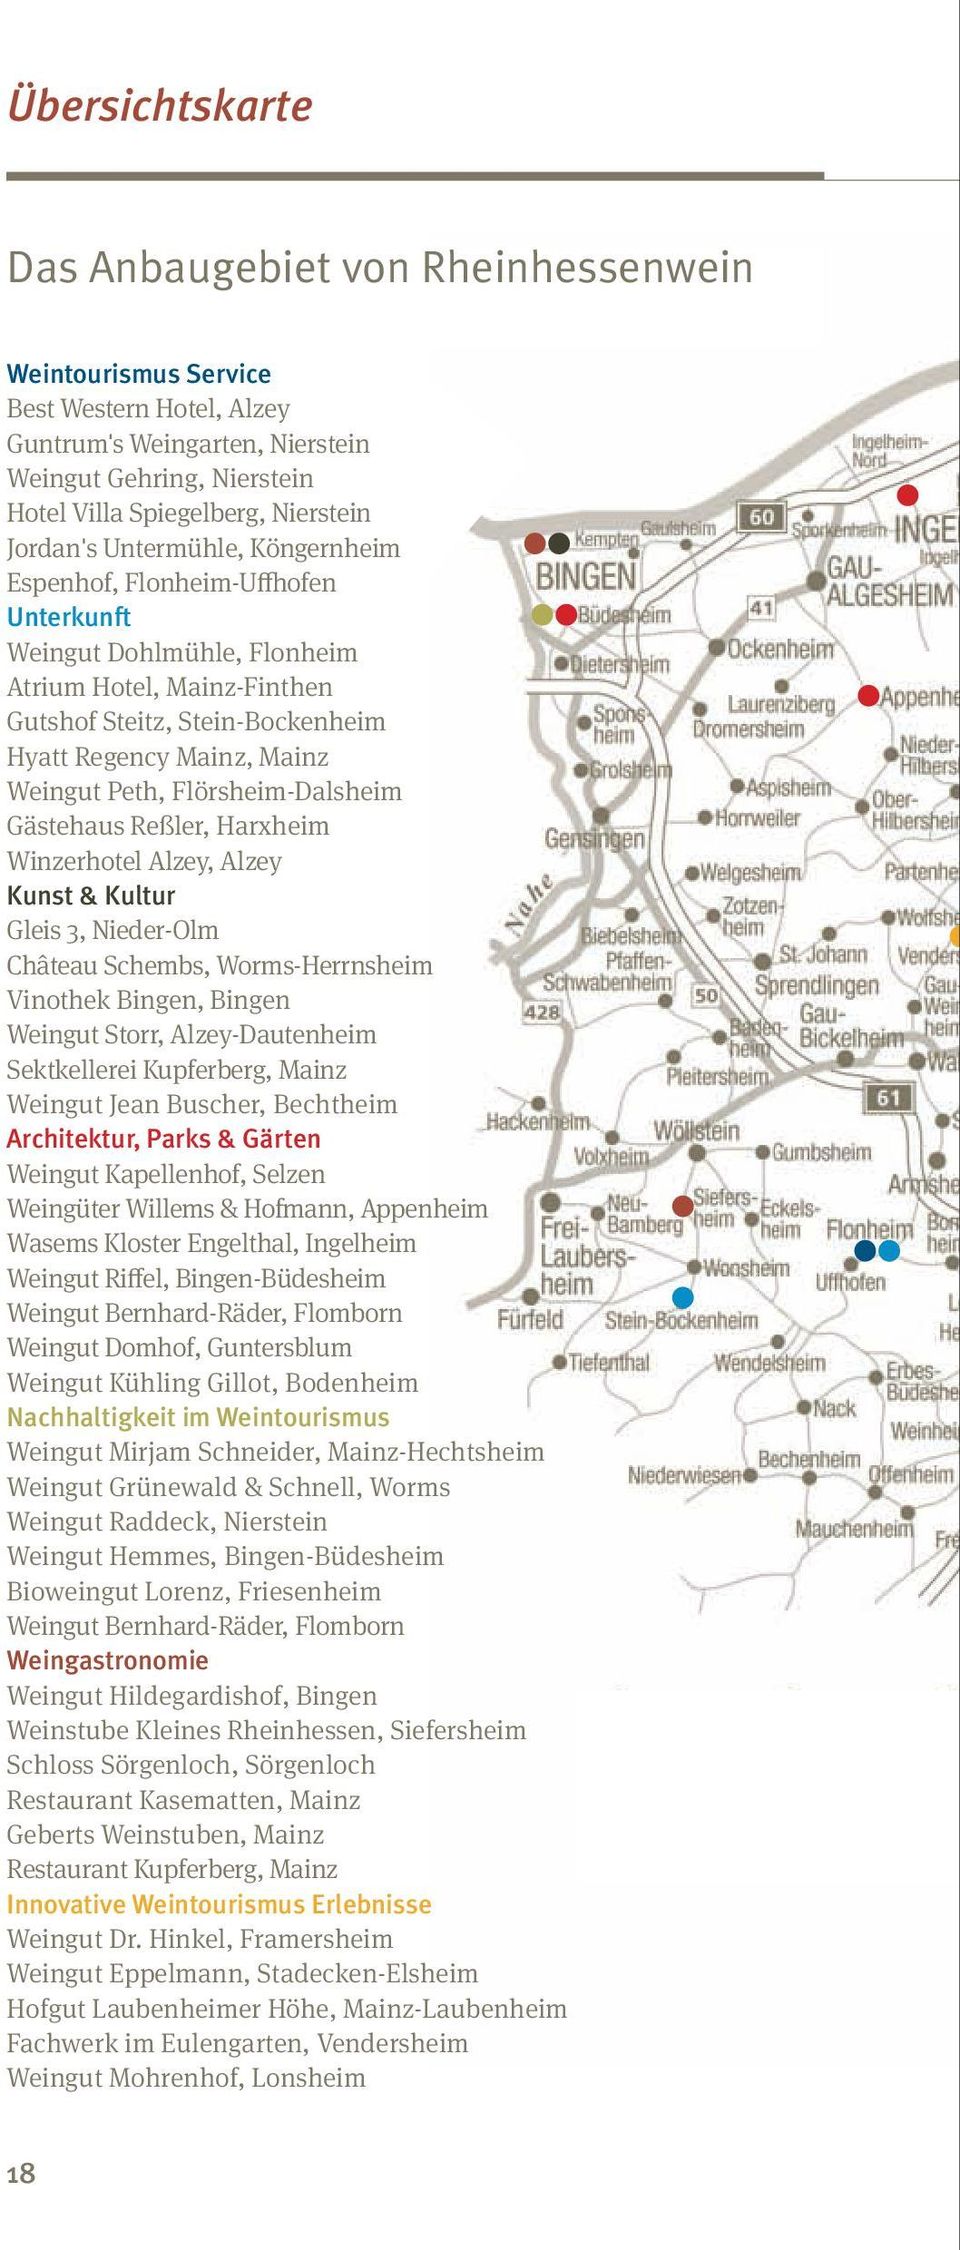 Peth, Flörsheim-Dalsheim Gästehaus Reßler, Harxheim Winzerhotel Alzey, Alzey Kunst & Kultur Gleis 3, Nieder-Olm Château Schembs, Worms-Herrnsheim Vinothek Bingen, Bingen Weingut Storr,